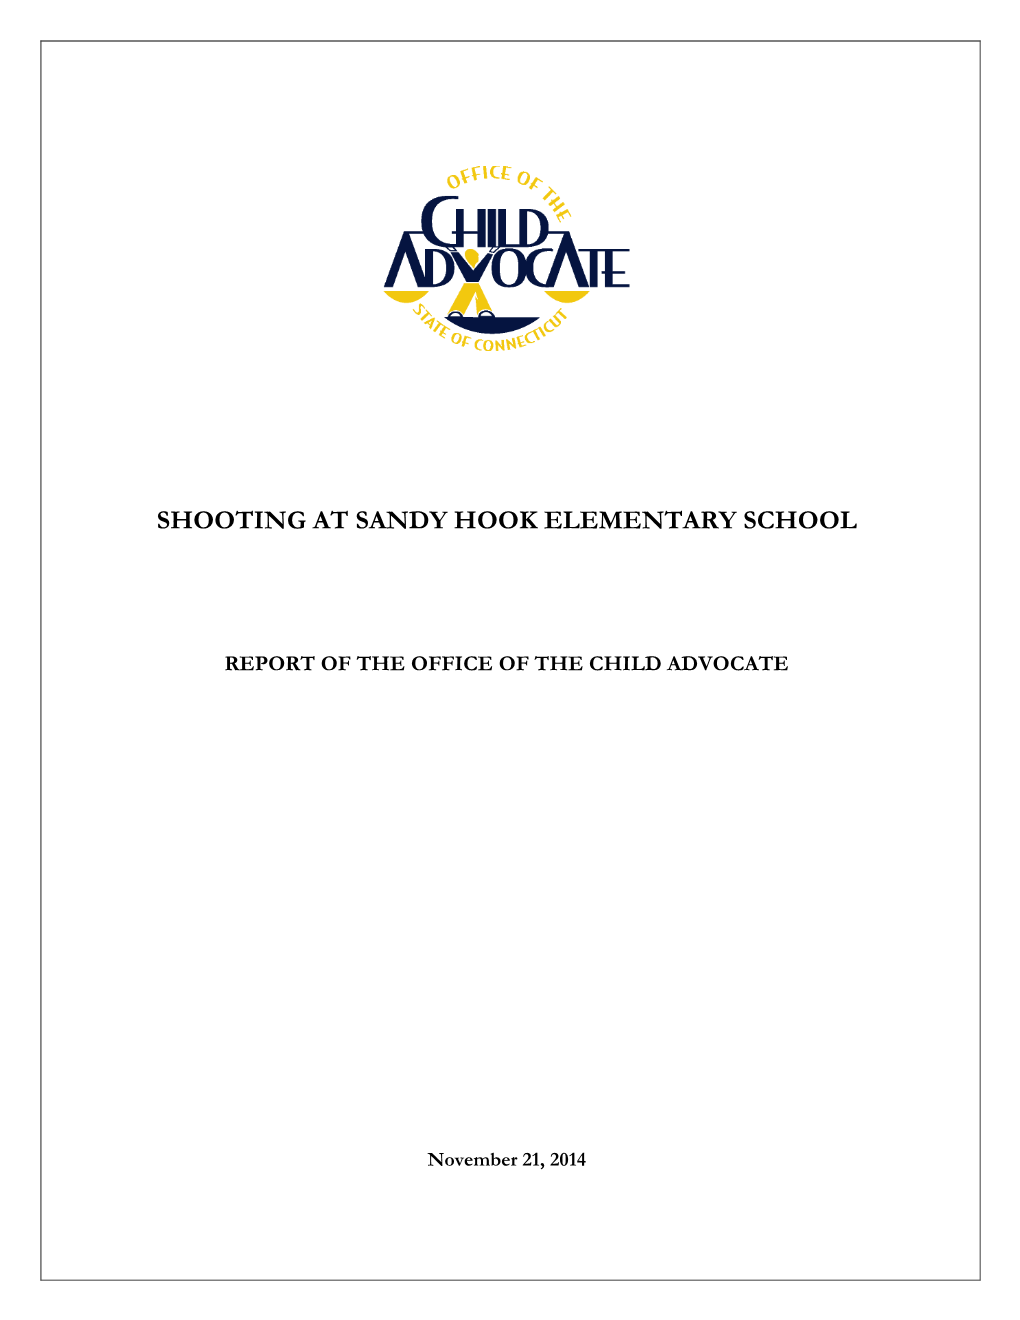 Report: Shooting at Sandy Hook Elementary School